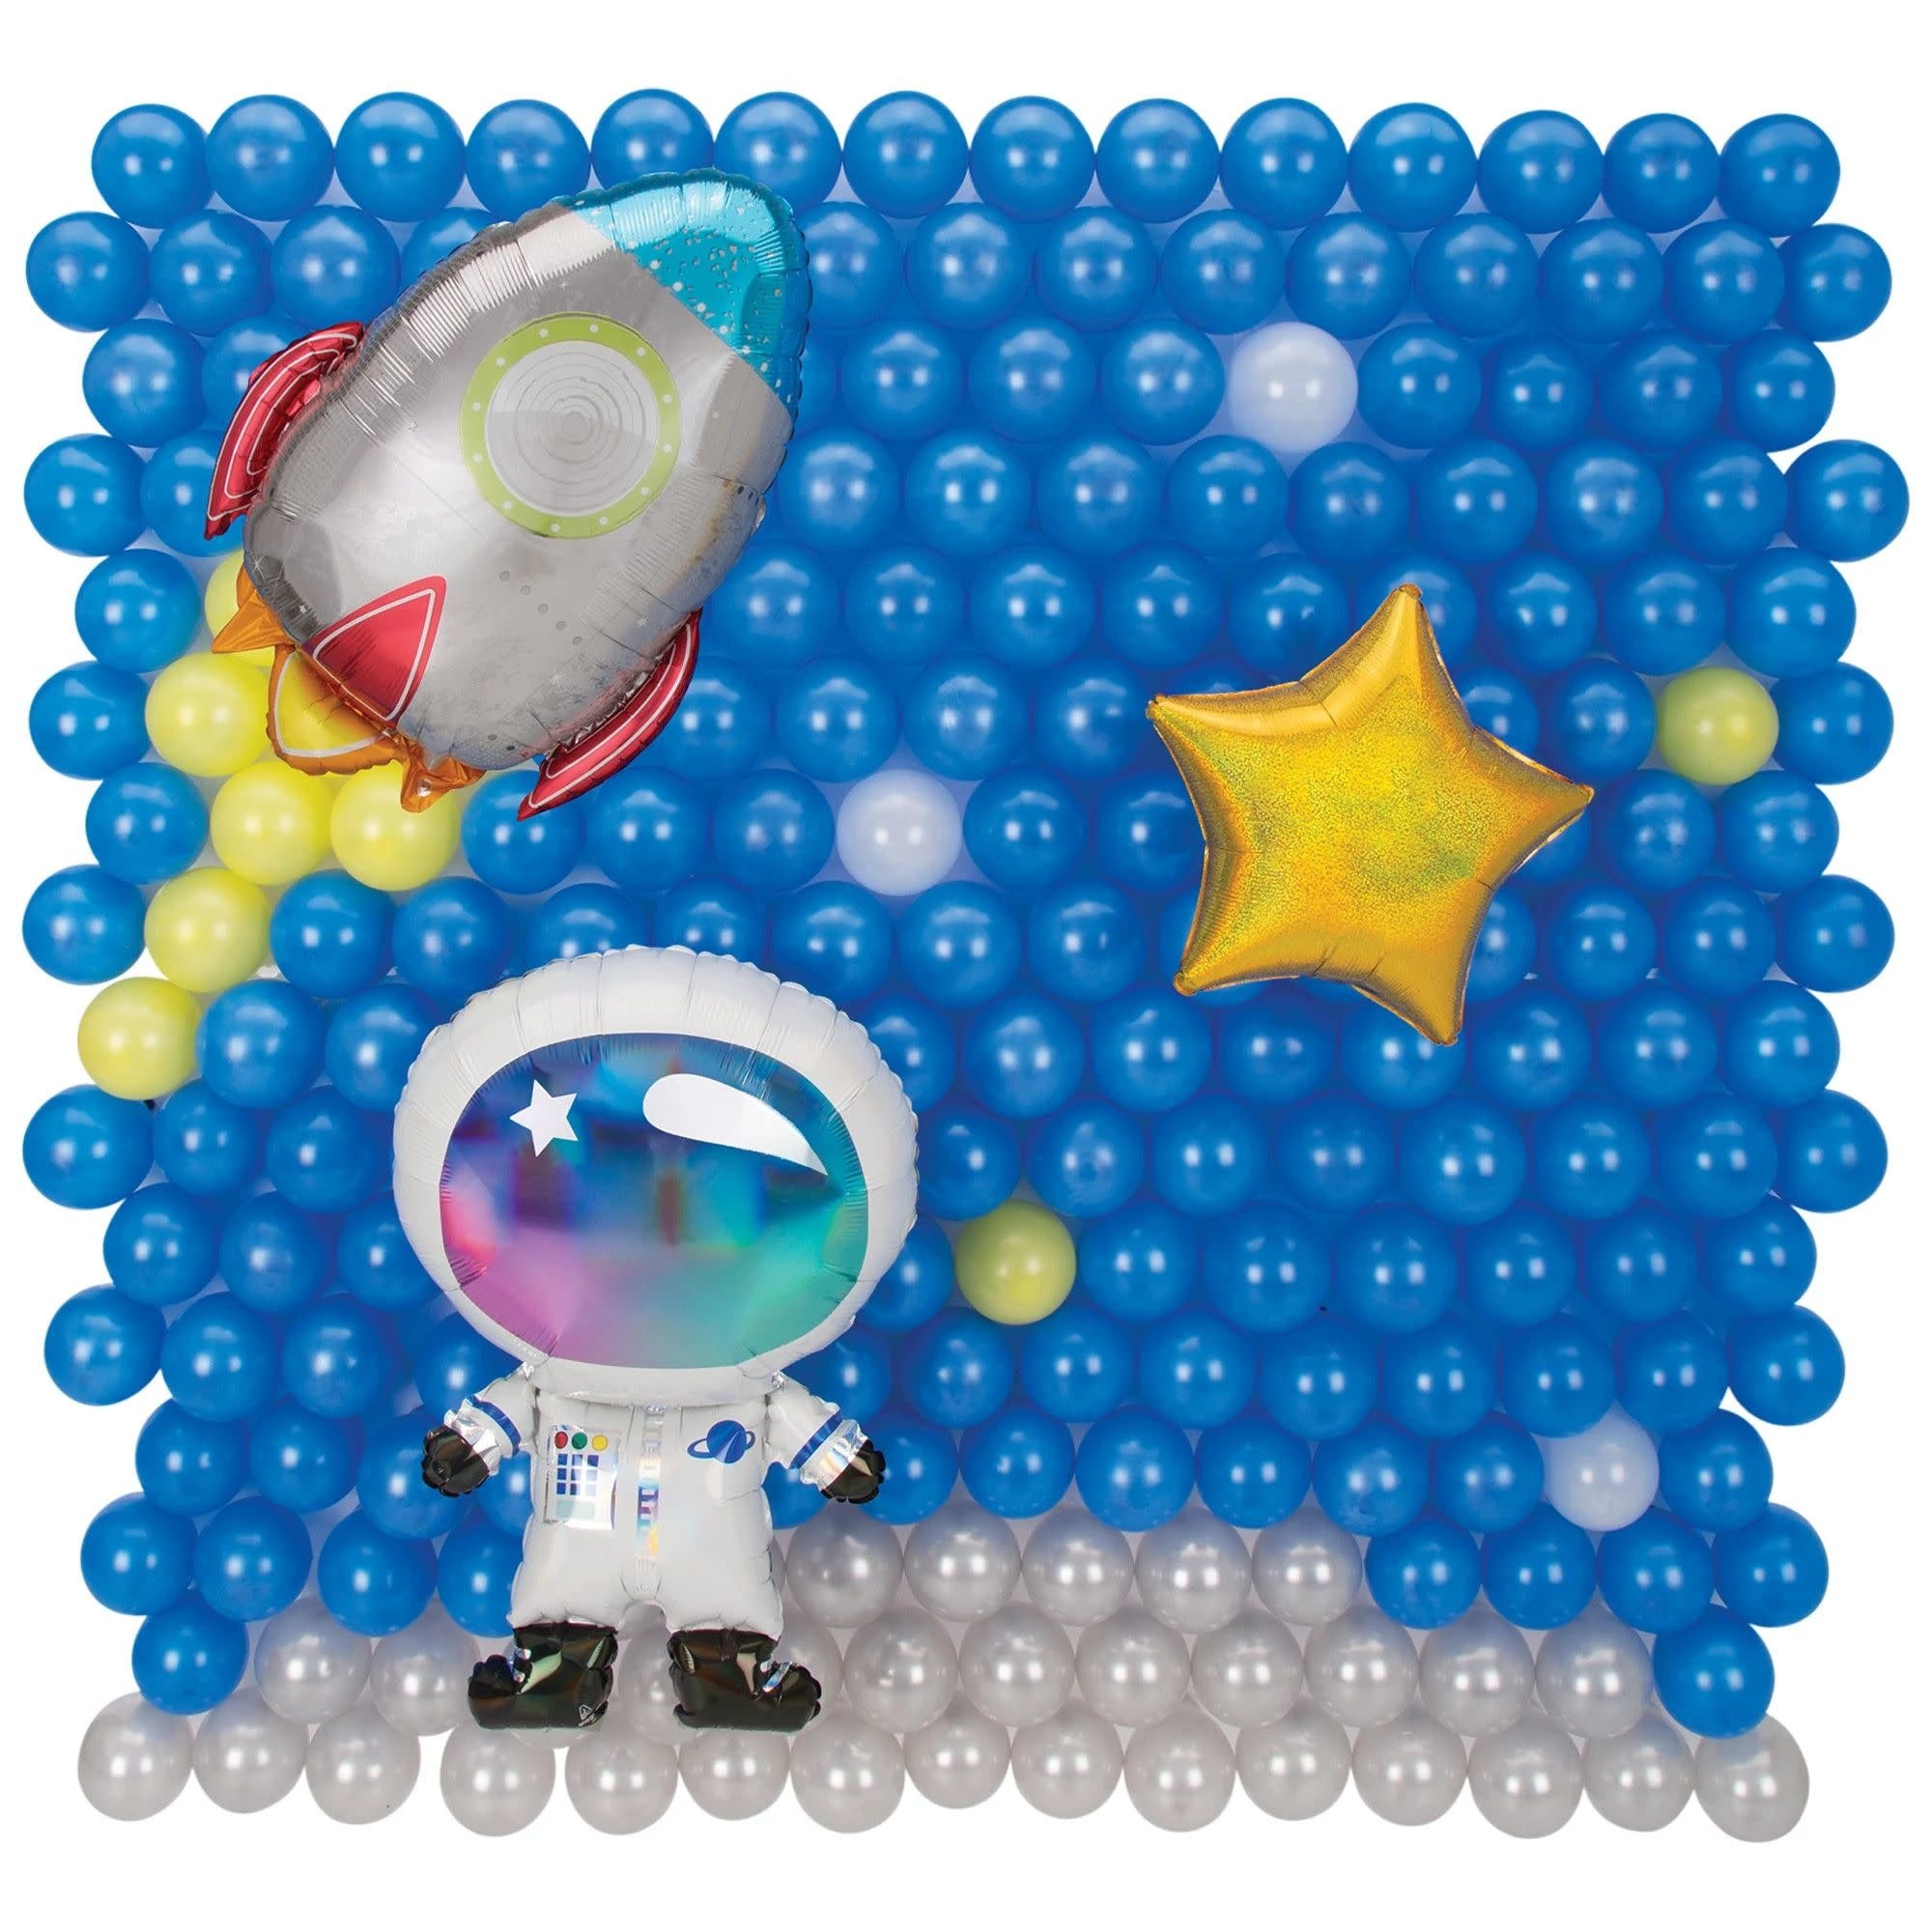 Ensemble De Ballons Pour Mur (179.8Cm X 190.5Cm) - Astronaute Party Shop